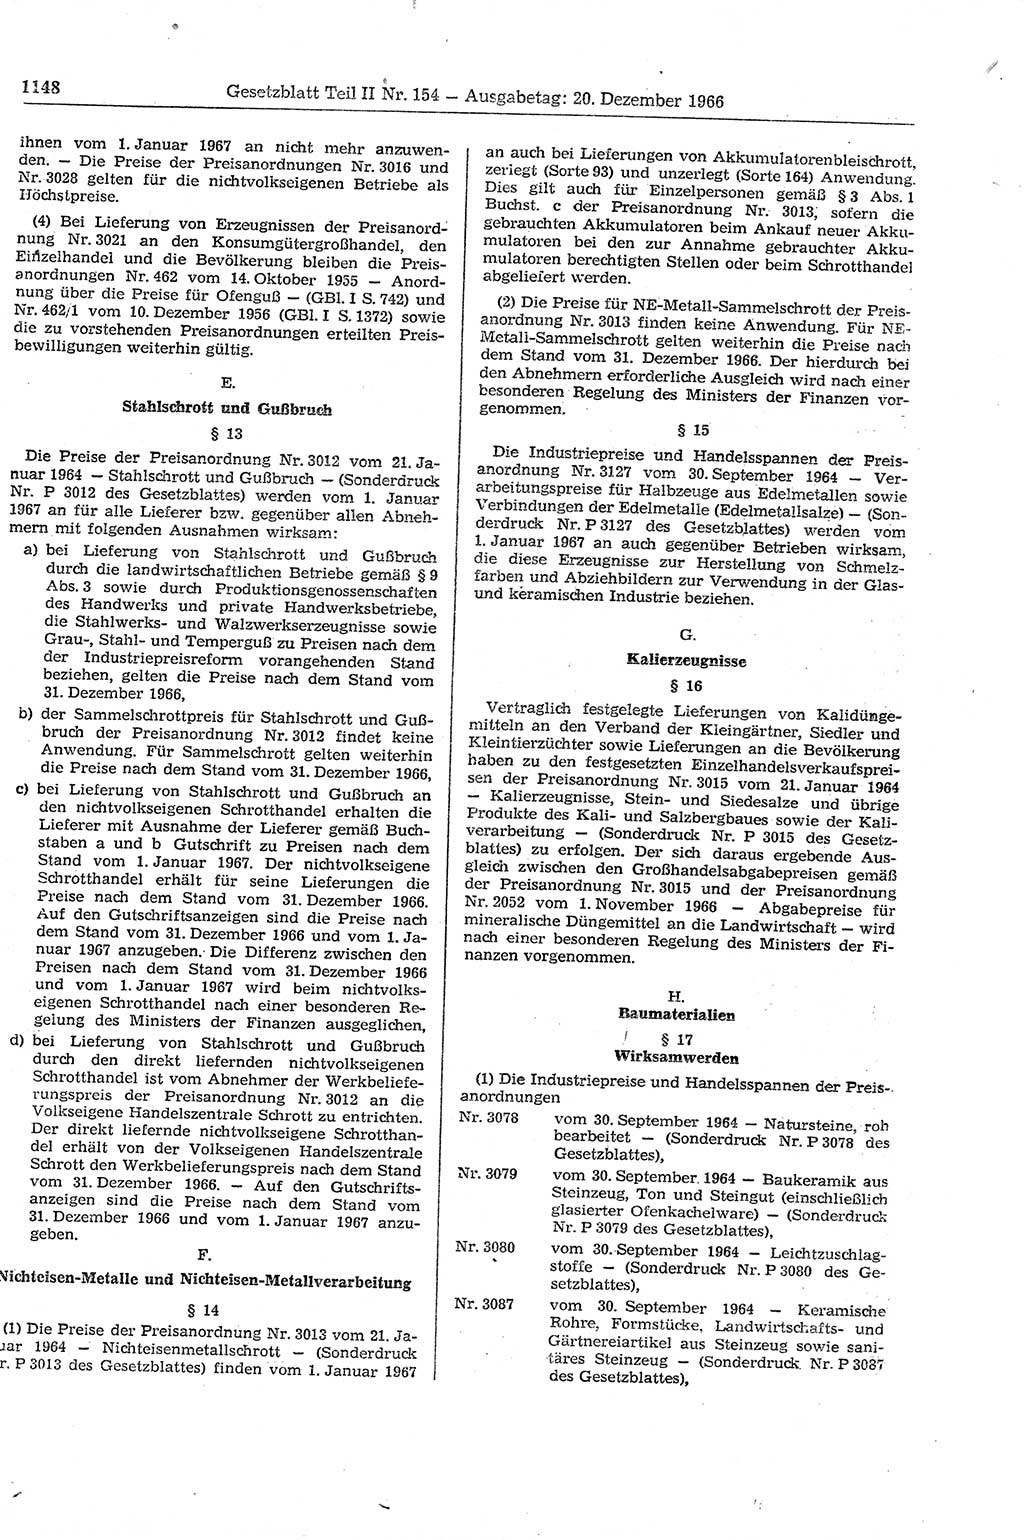 Gesetzblatt (GBl.) der Deutschen Demokratischen Republik (DDR) Teil ⅠⅠ 1966, Seite 1148 (GBl. DDR ⅠⅠ 1966, S. 1148)